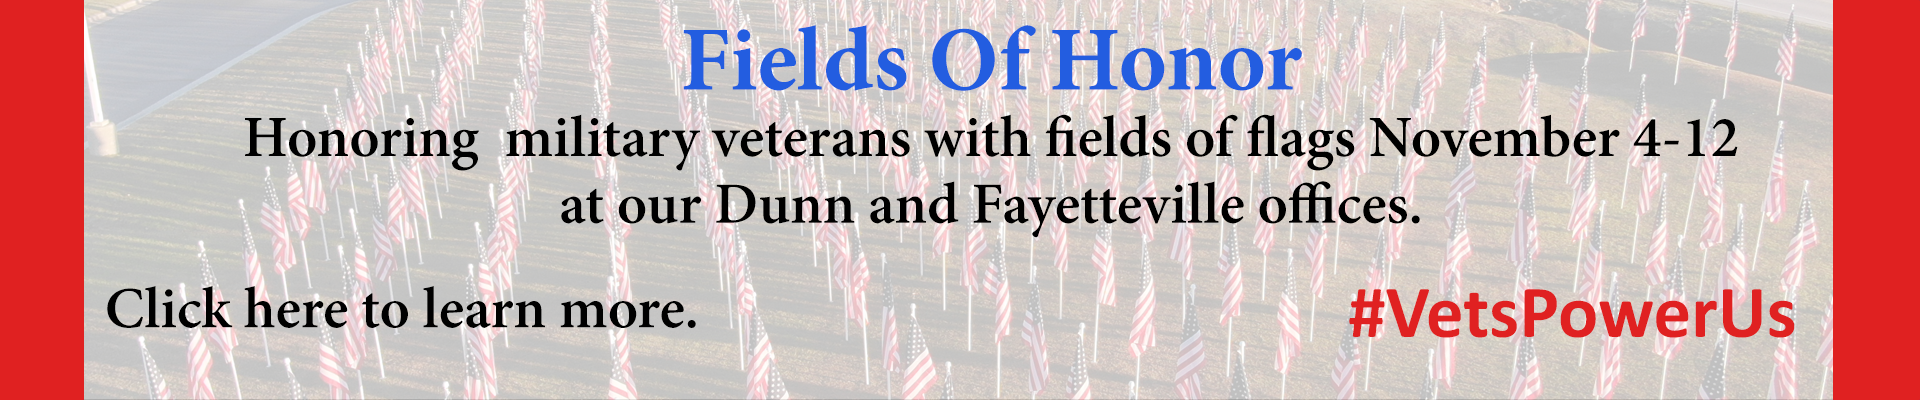 Fields of Honor November 4-12